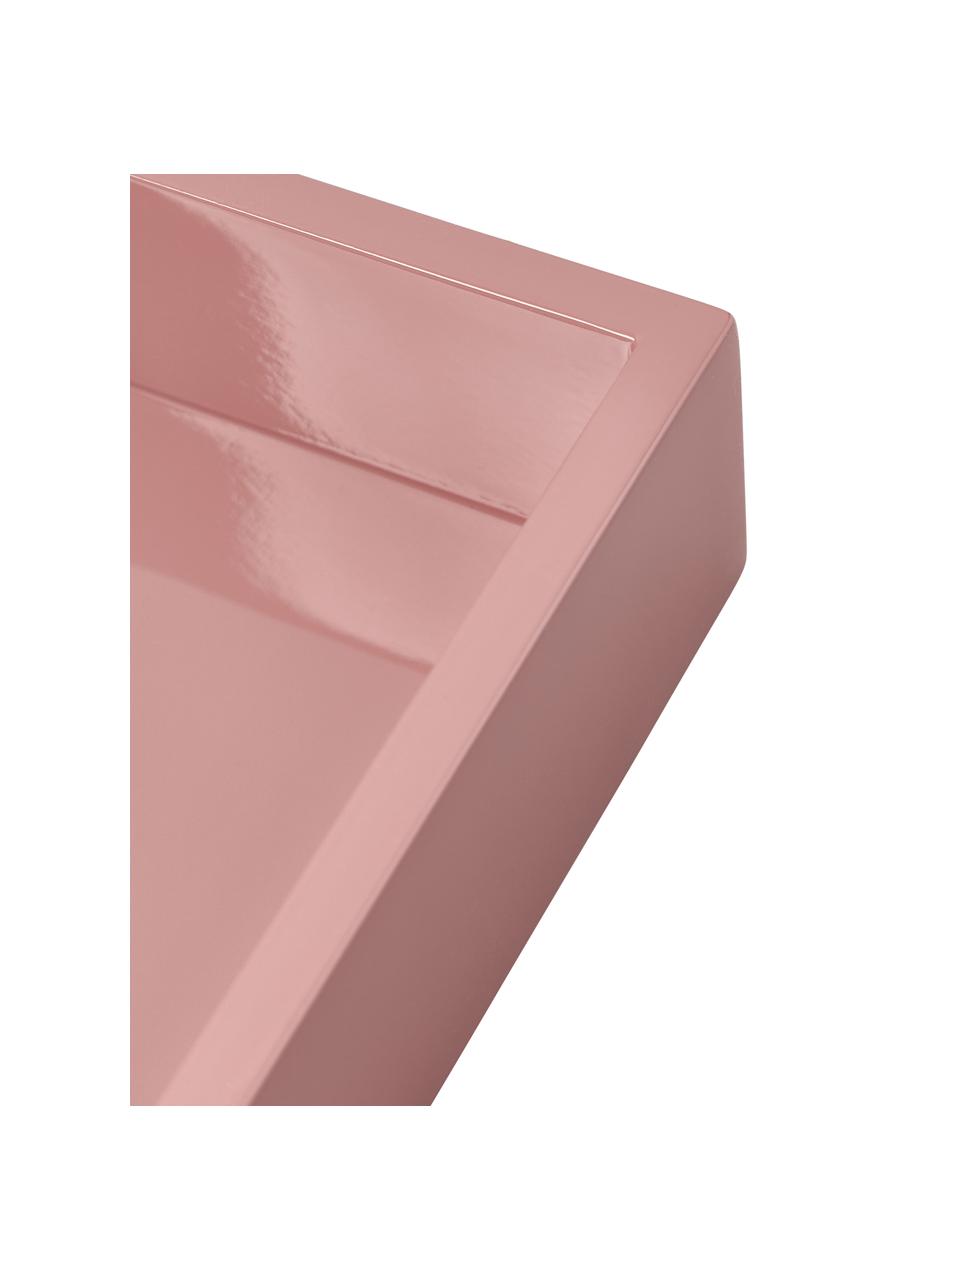 Hoogglans dienblad Hayley, Gelakt middeldichte vezeplaat (MDF), Donkerroze, B 24 x L 33 cm